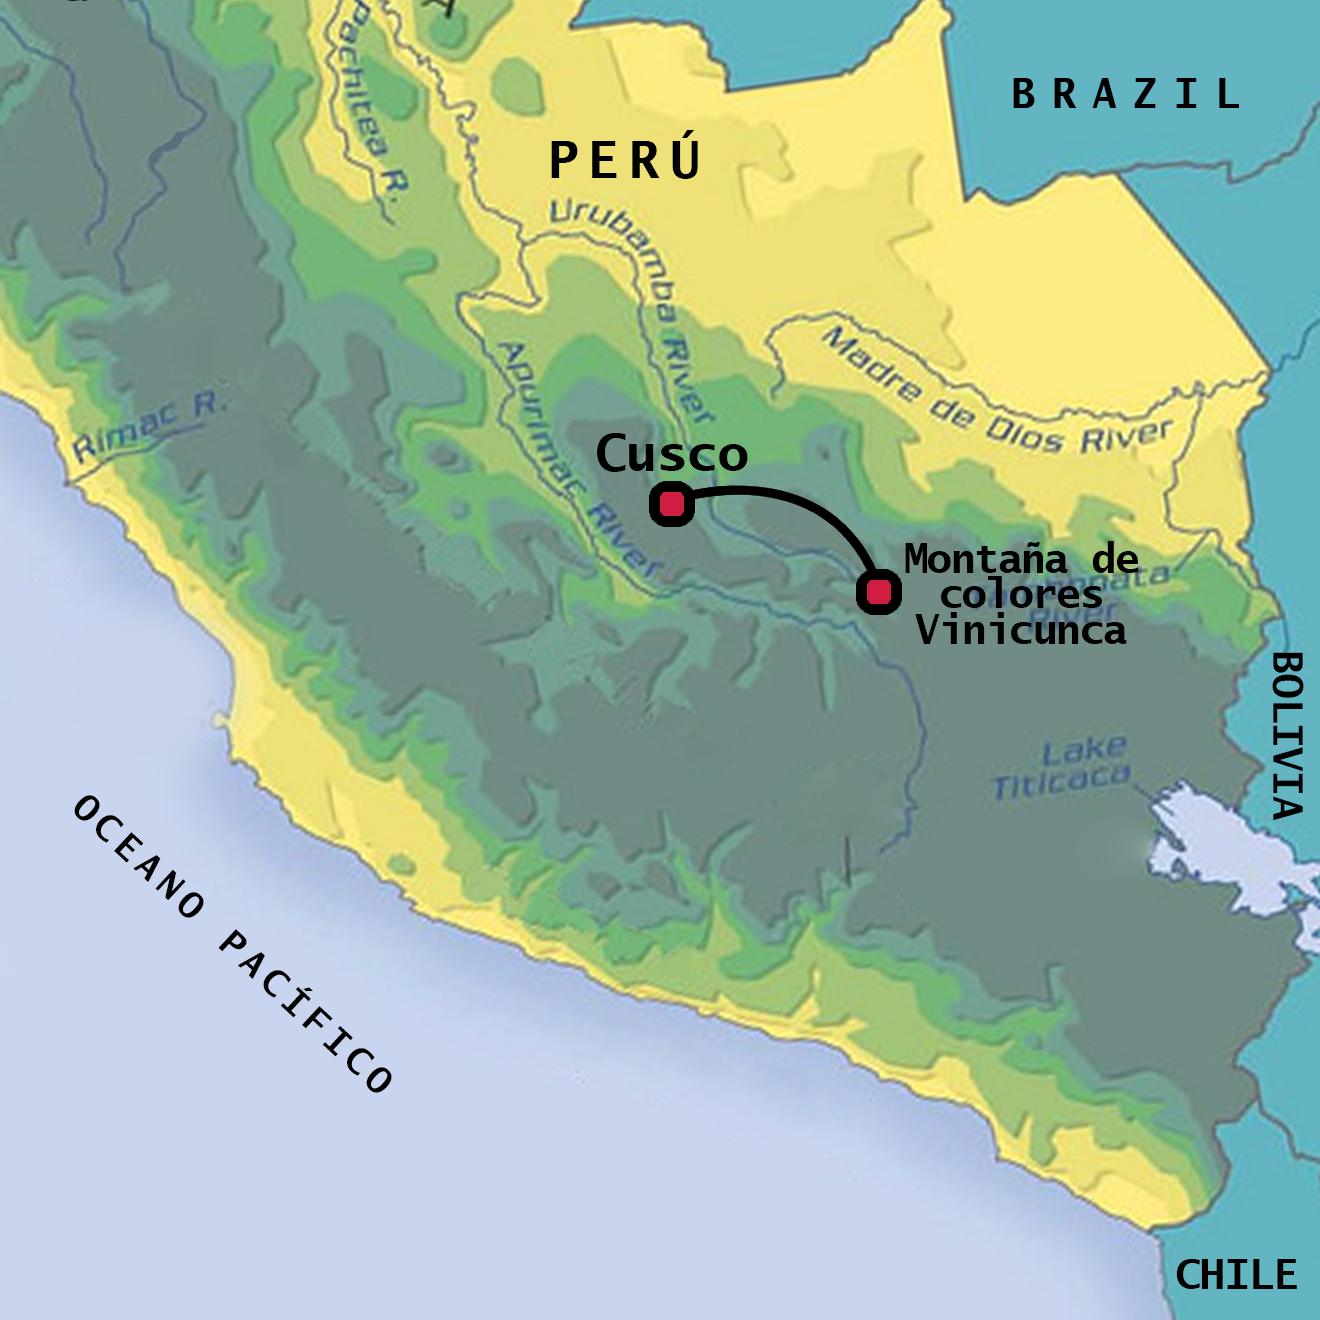 peru térkép Szivárvány hegy Peru térkép   Vinicunca Peru térkép (Dél Amerika  peru térkép